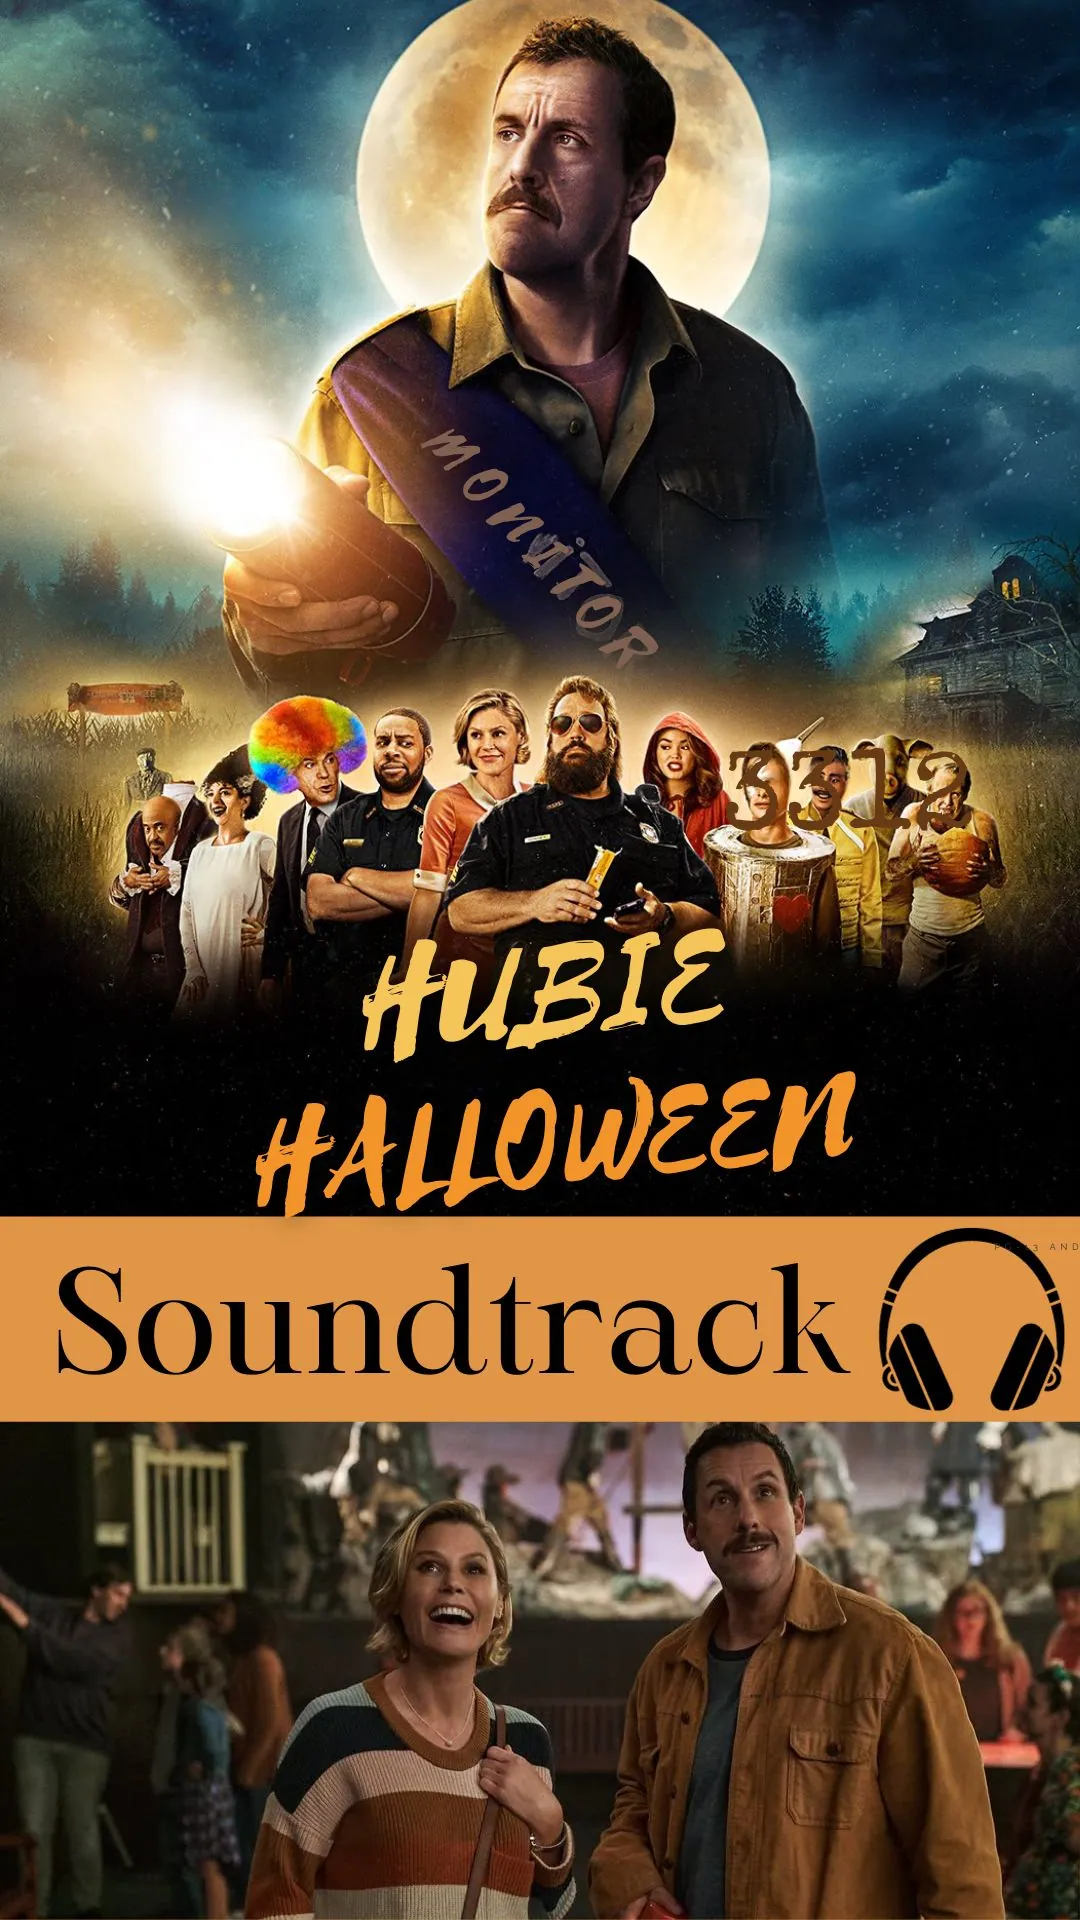 Hubie Halloween Soundtrack